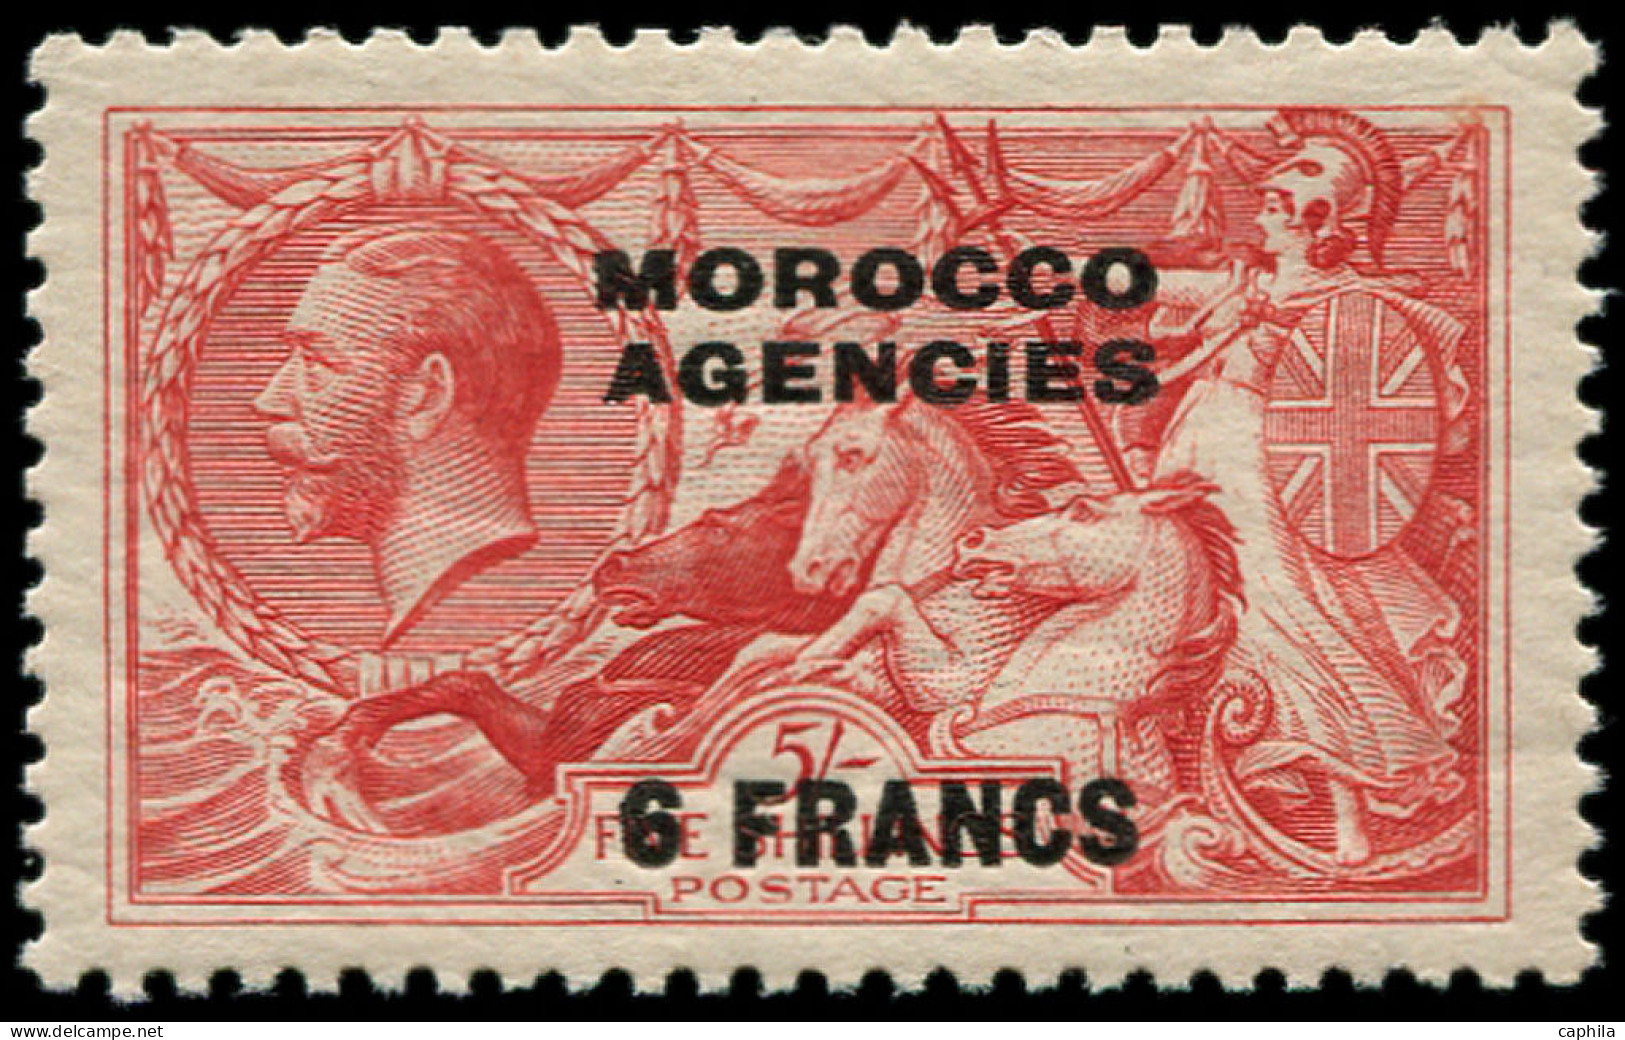 ** MAROC GB BUREAUX - Poste - Zone Française 11, 6f. S 5s. Rouge - Morocco Agencies / Tangier (...-1958)